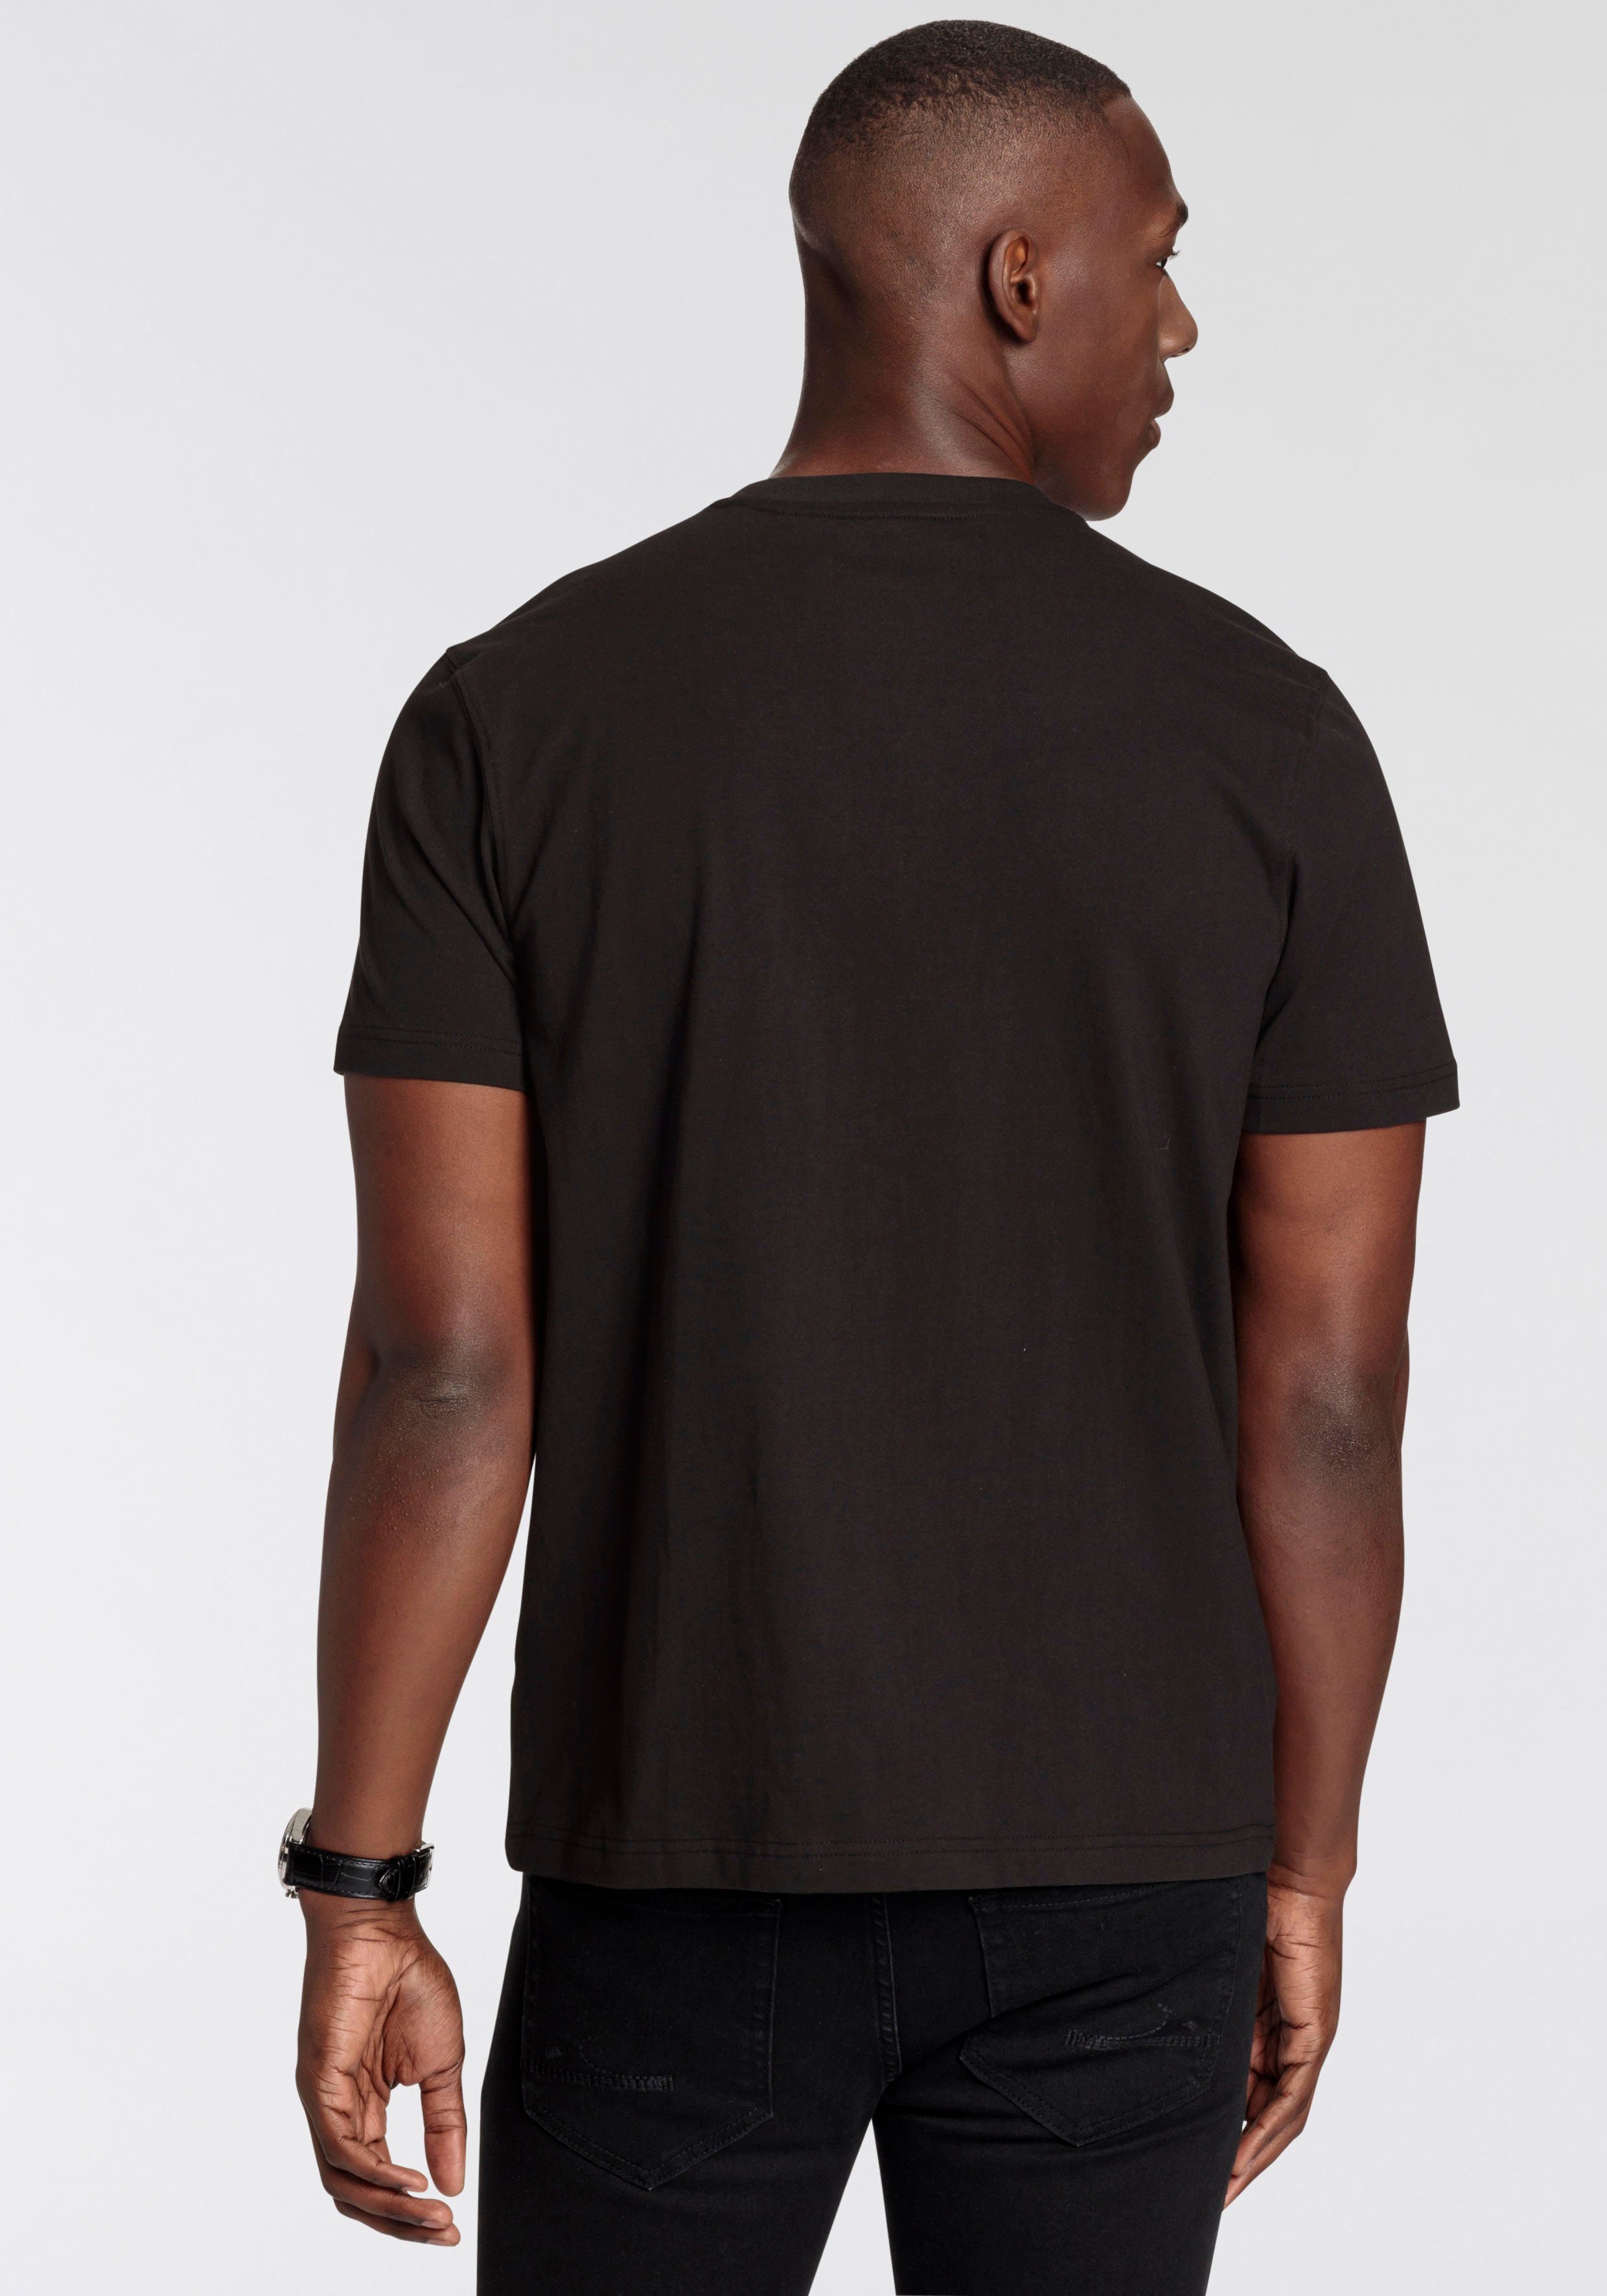 DELMAO T-Shirt mit modischem Brustprint NEUE schwarz MARKE! 